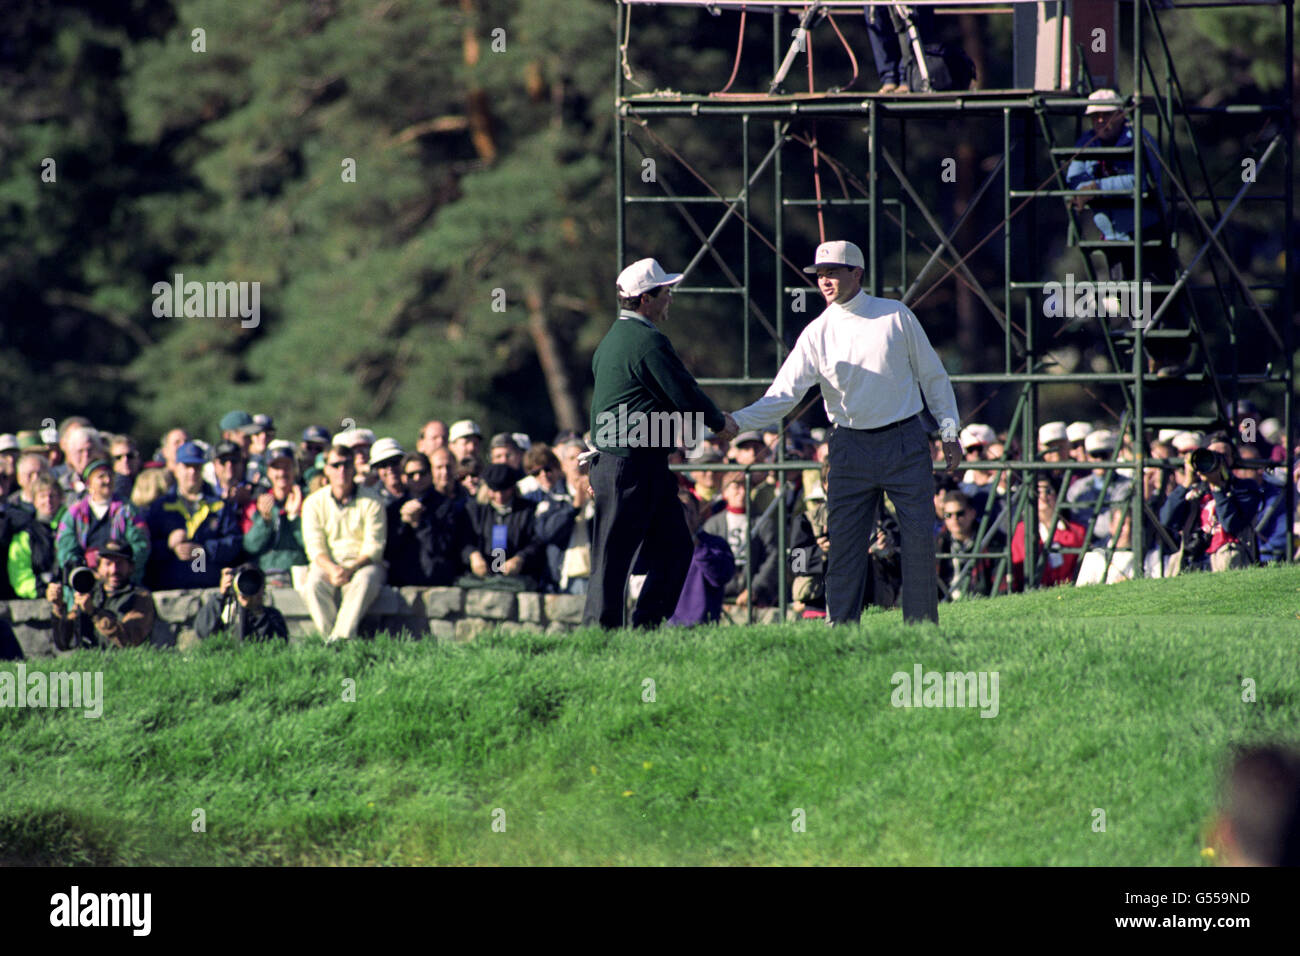 Golf - 1995 Ryder Cup - Costantino Rocca - Oak Hill Country Club, New York. Davis Love III gratuliert Costantino Rocca zu seinem Loch in einem. Stockfoto